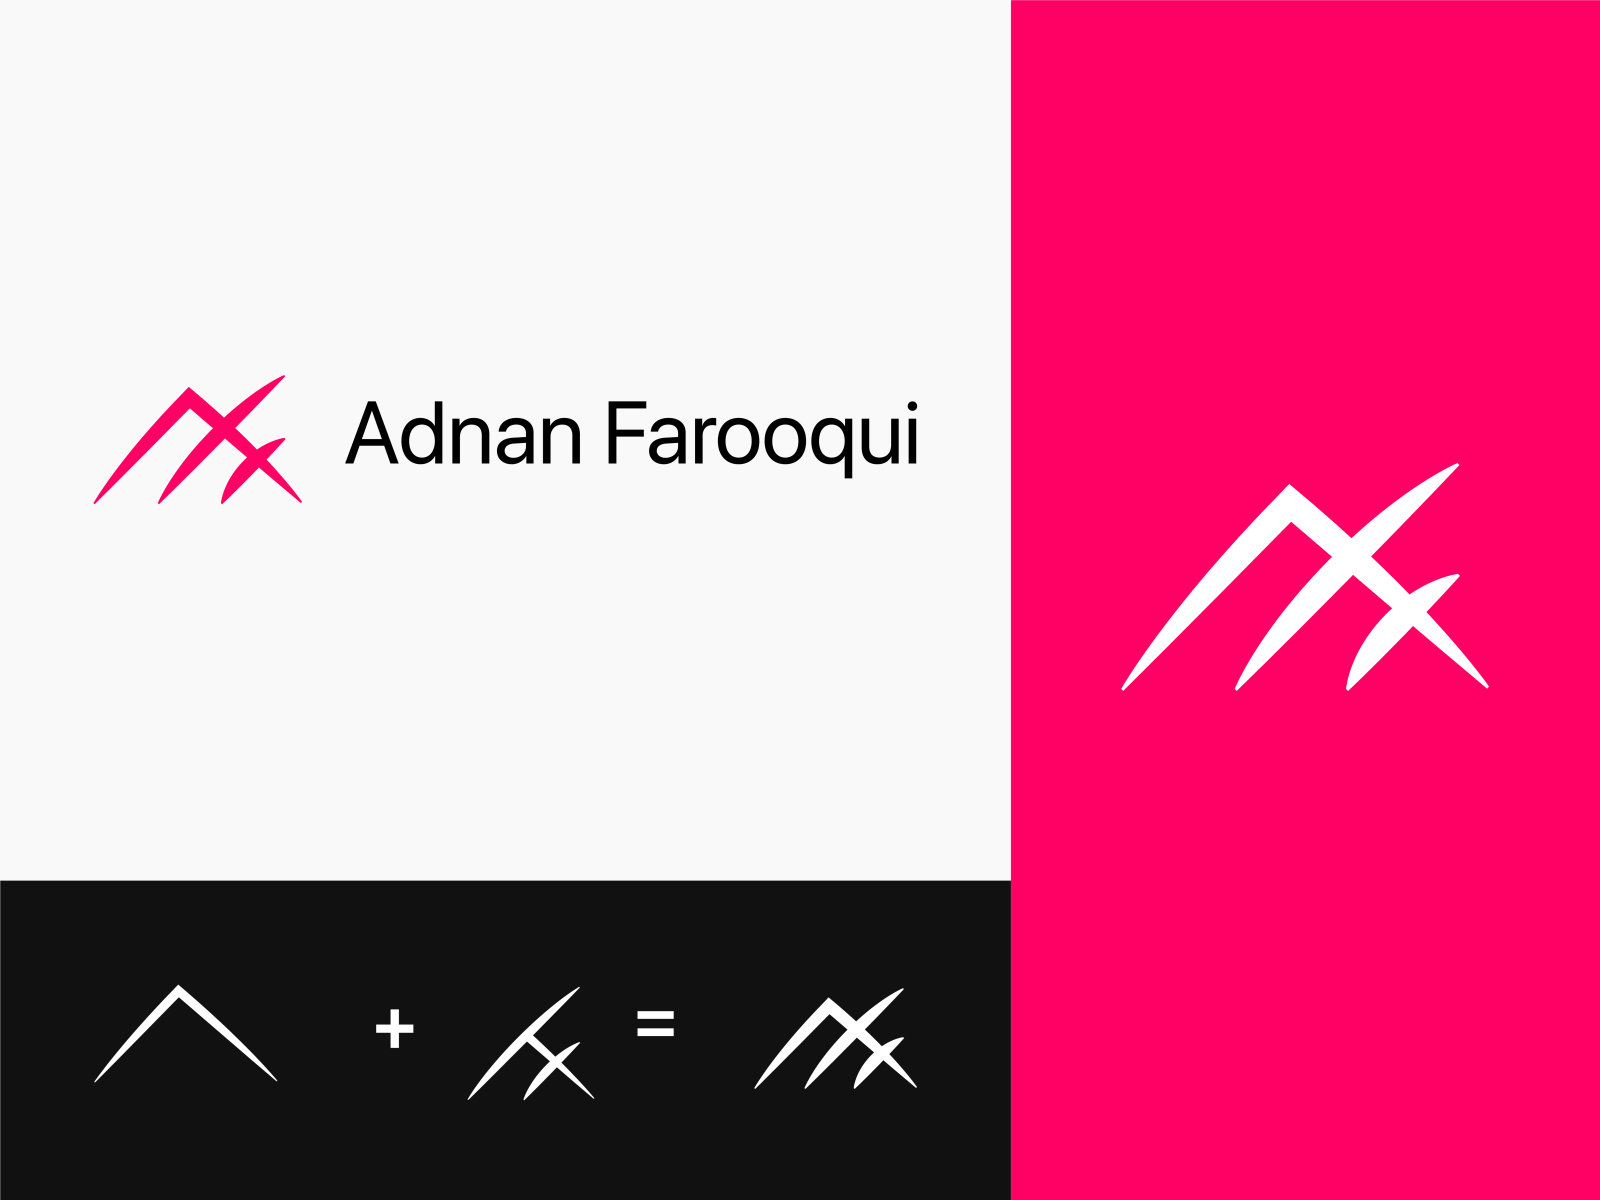 Processo de design de logotipo 2023 - comece e cresça seu negócio de design  de logotipo, Adnan Farooqui